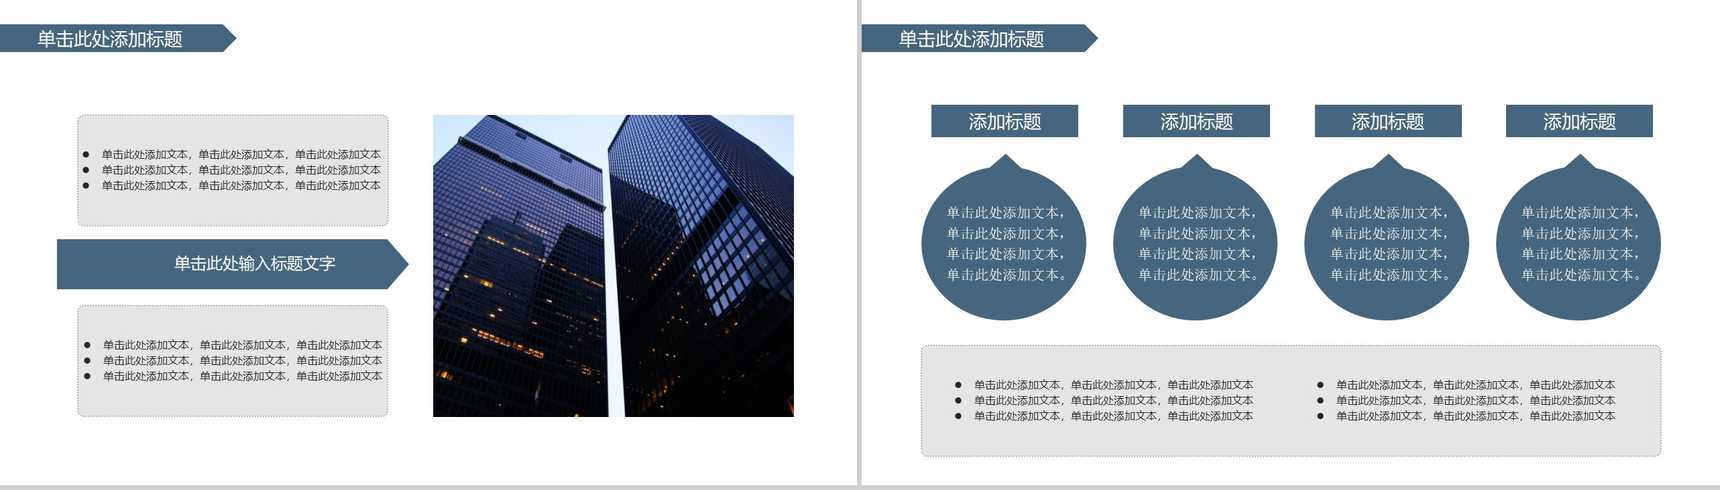 简约商务都市风格企业简介产品介绍PPT模板-9